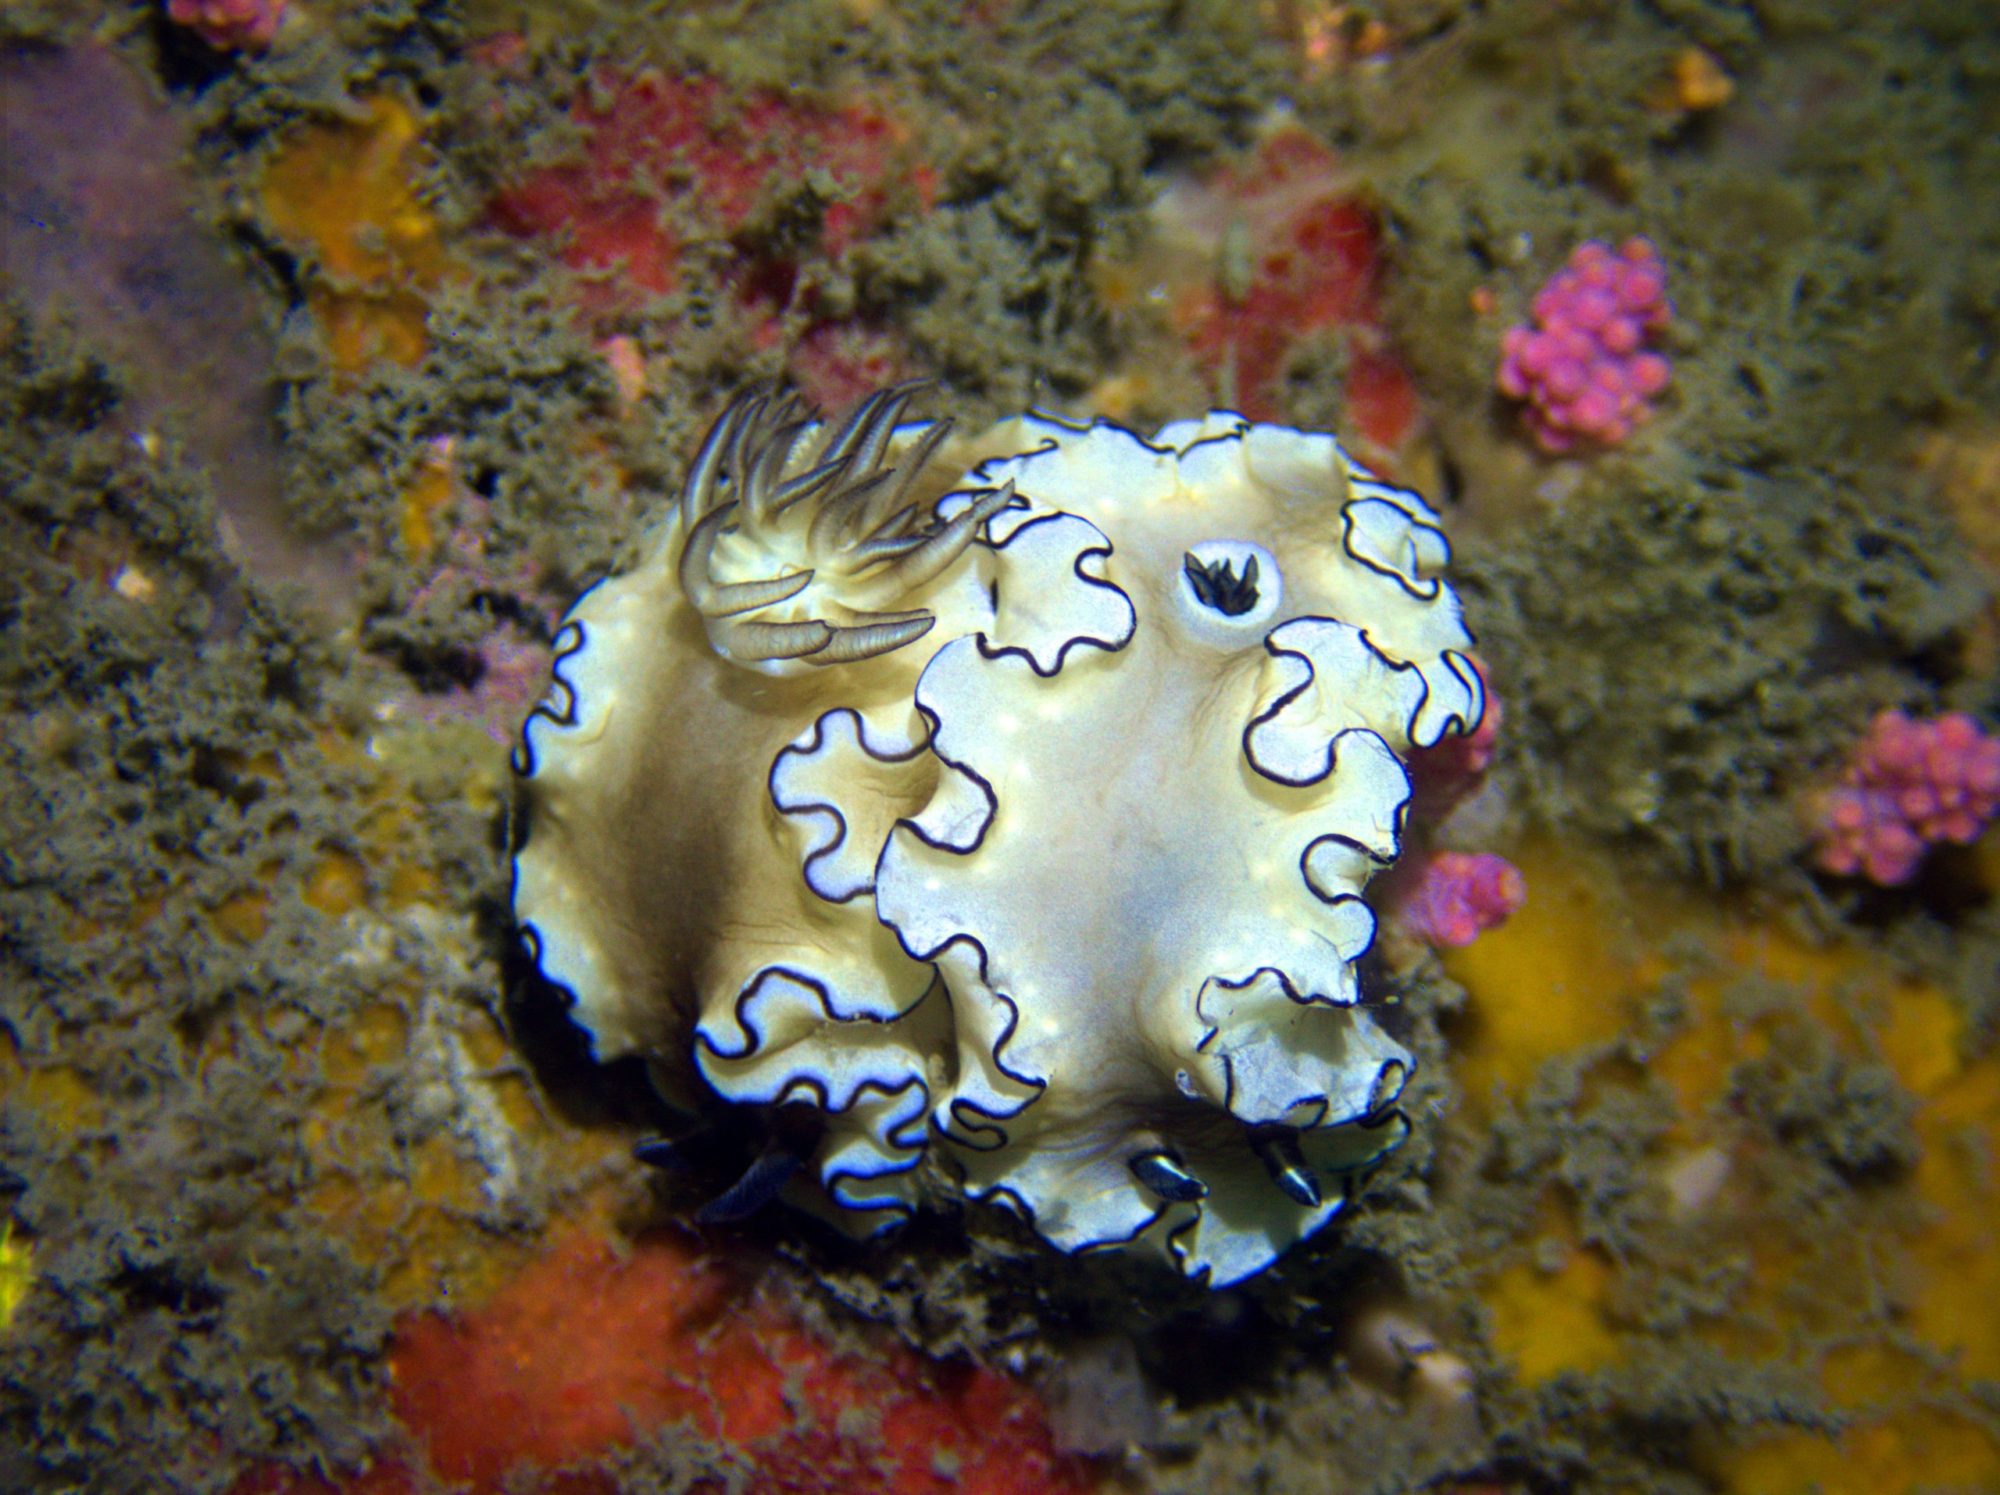 Diving in Taiwan nudibranchs